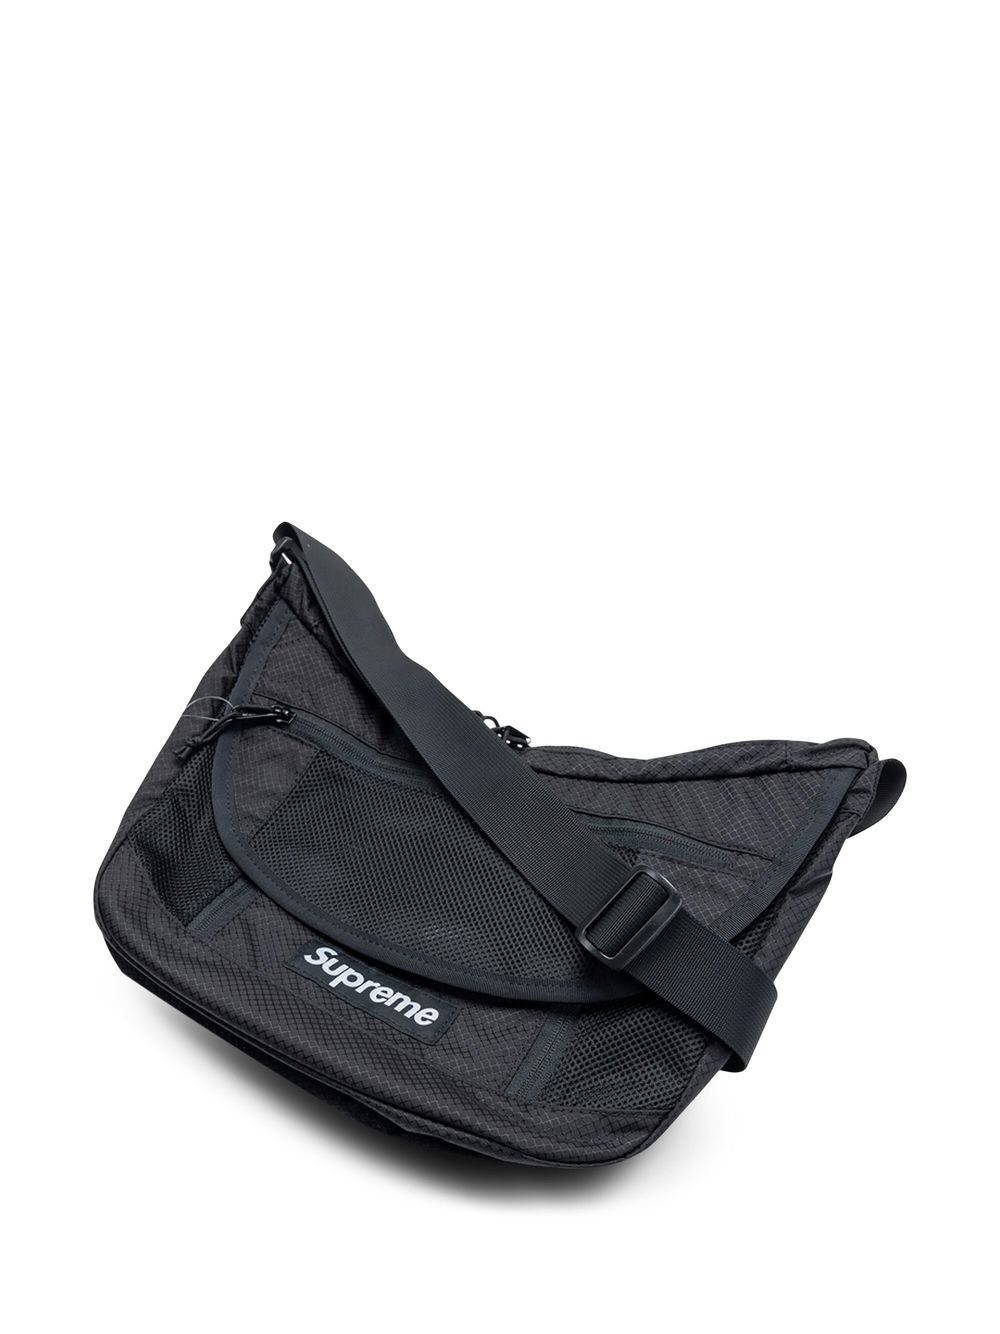 Supreme logo-patch shoulder bag | REVERSIBLE